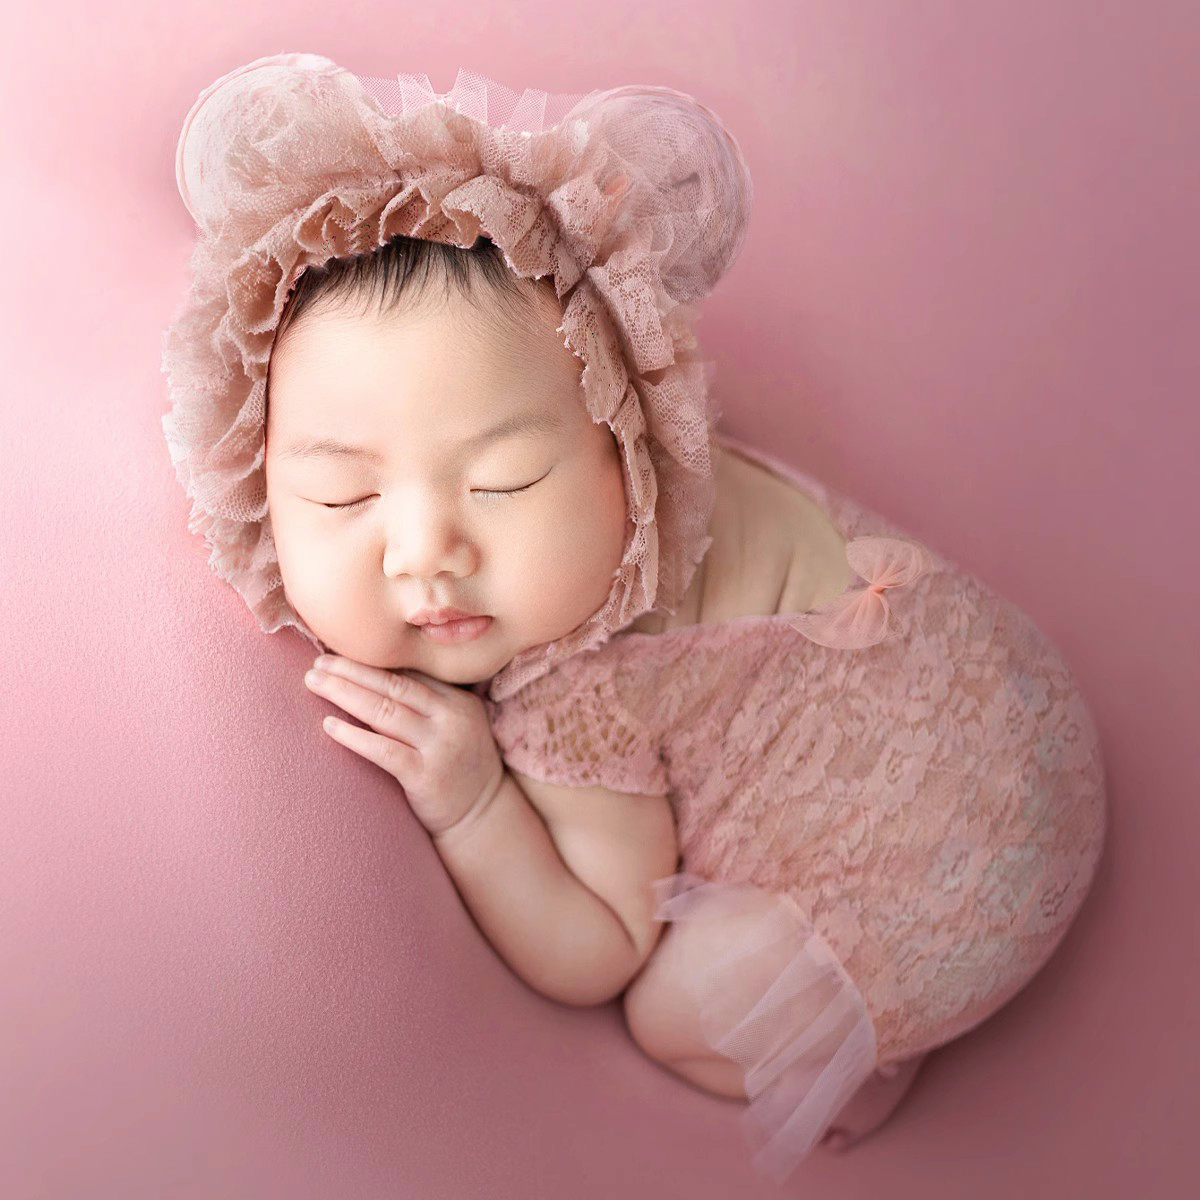 新生儿摄影服装宝宝拍照蕾丝帽子衣服影楼道具婴儿月子照相写真服